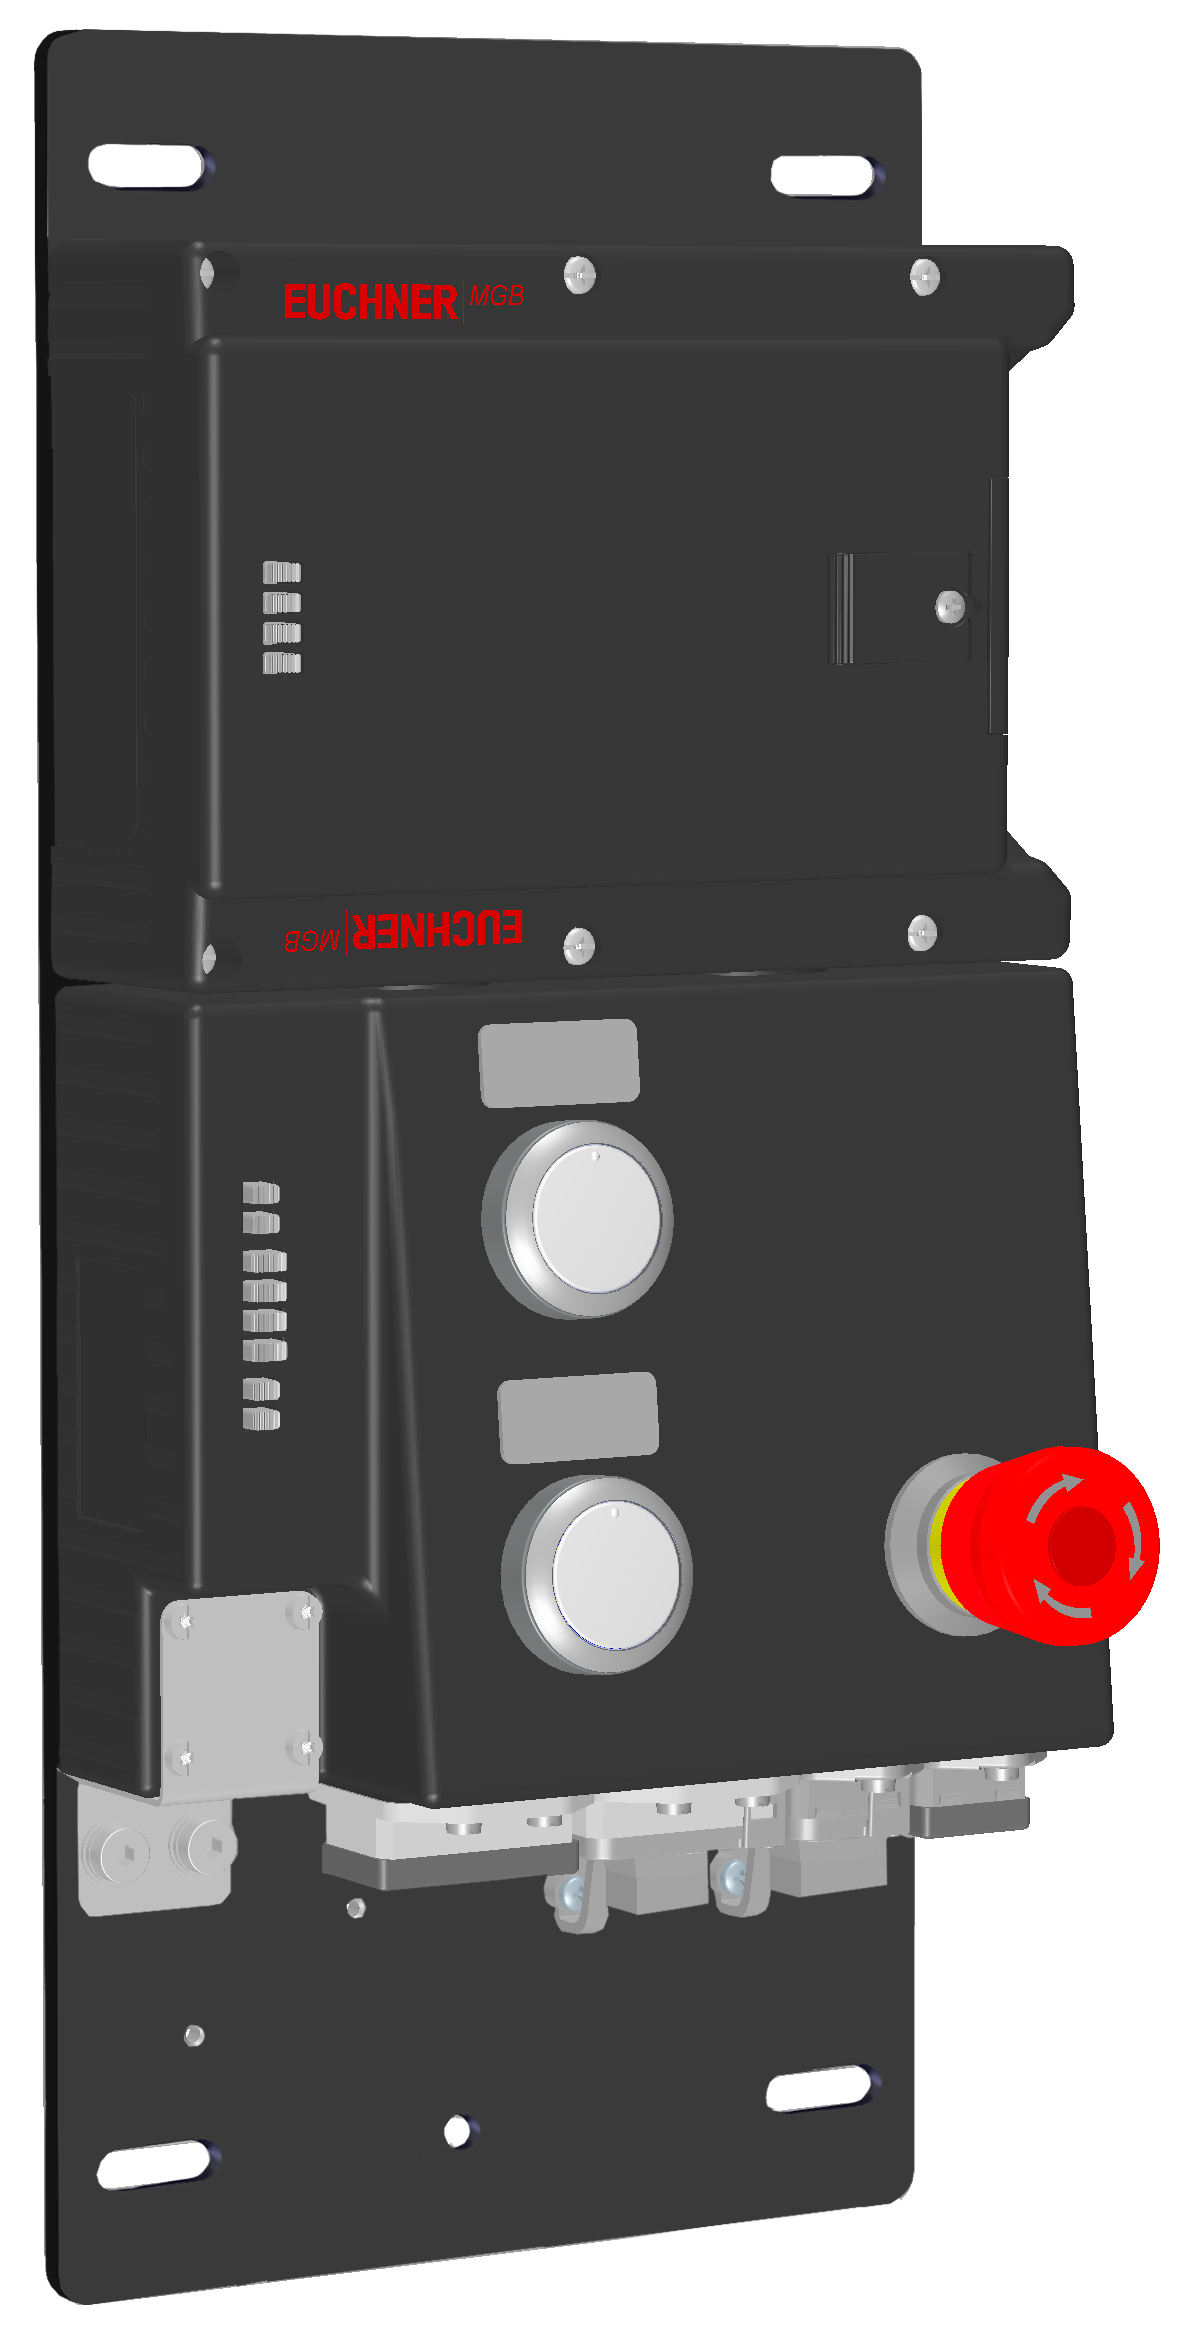 Locking modules MGB-L1B-PNA-R-121851  (Order no. 121851)